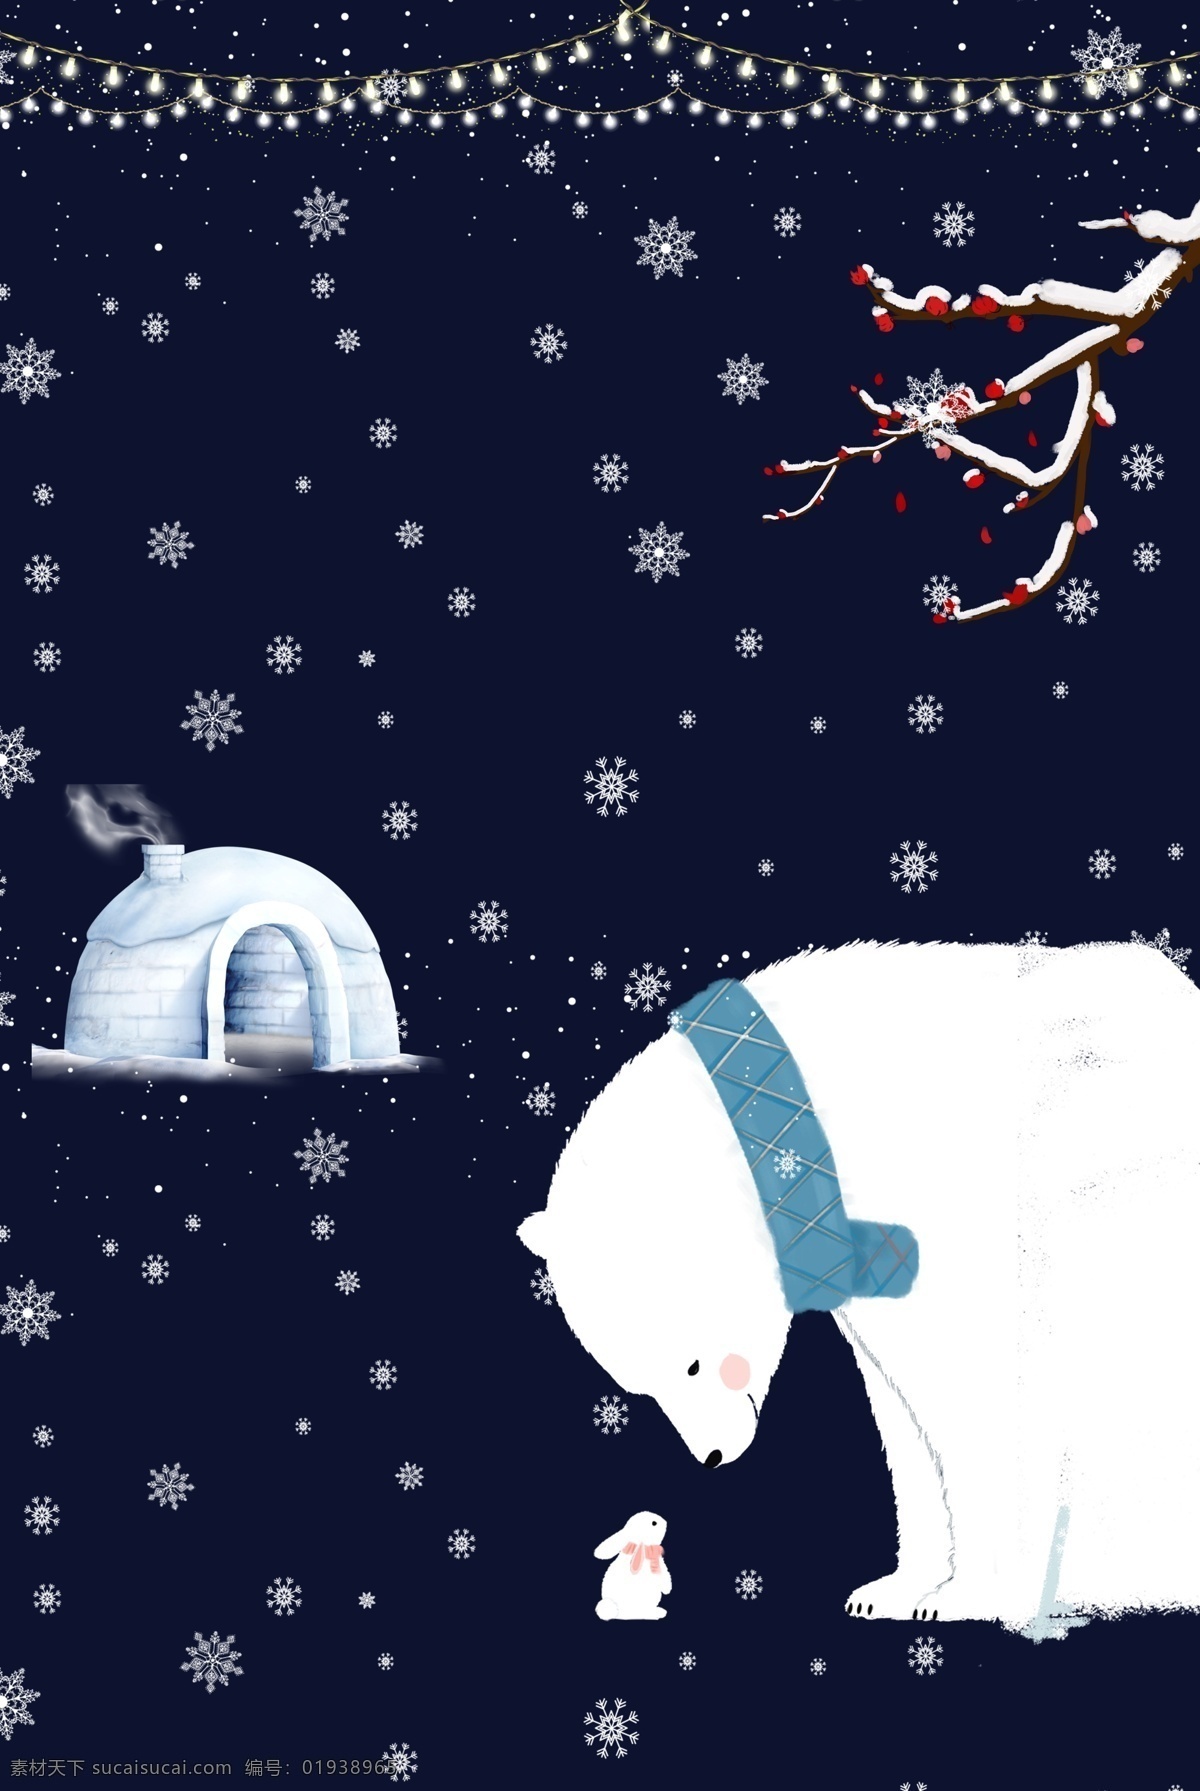 大雪 节气 北极熊 冰天雪地 背景 宣传海报 传统 二十四节气 雪花海报背景 雪 节气背景 下雪 卡通